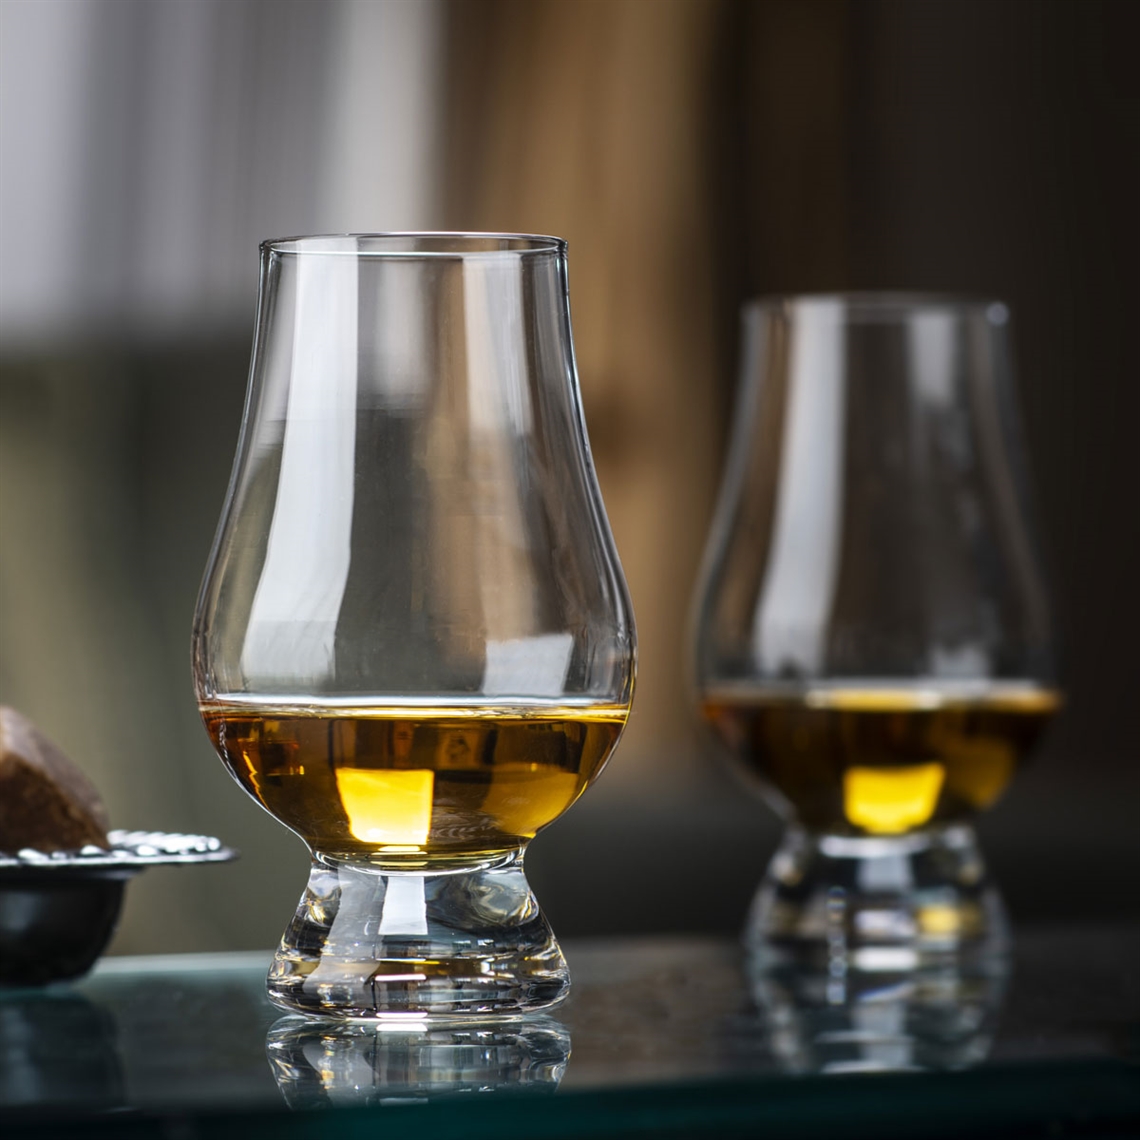 The Glencairn Official Whisky Glass Set - 4 Glasses / 1 Jug / 4 Caps